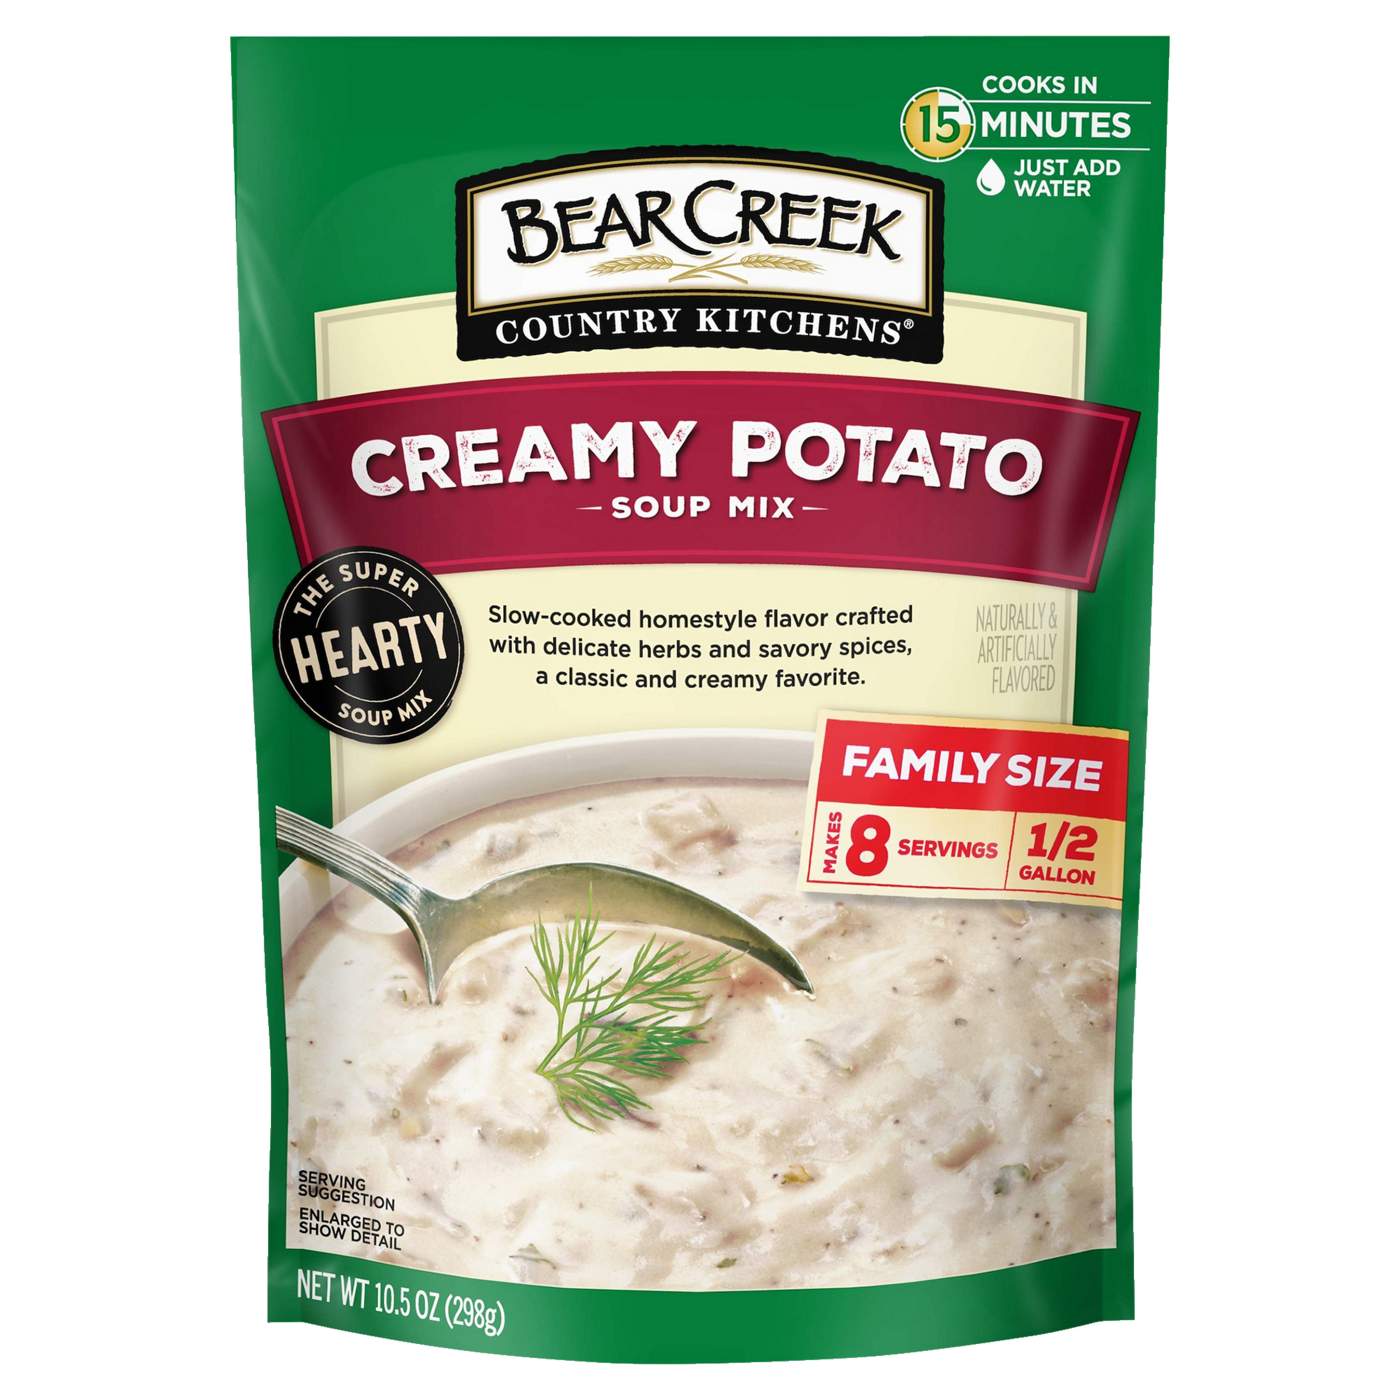 Bear Creek Creamy Potato Soup Mix; image 1 of 3